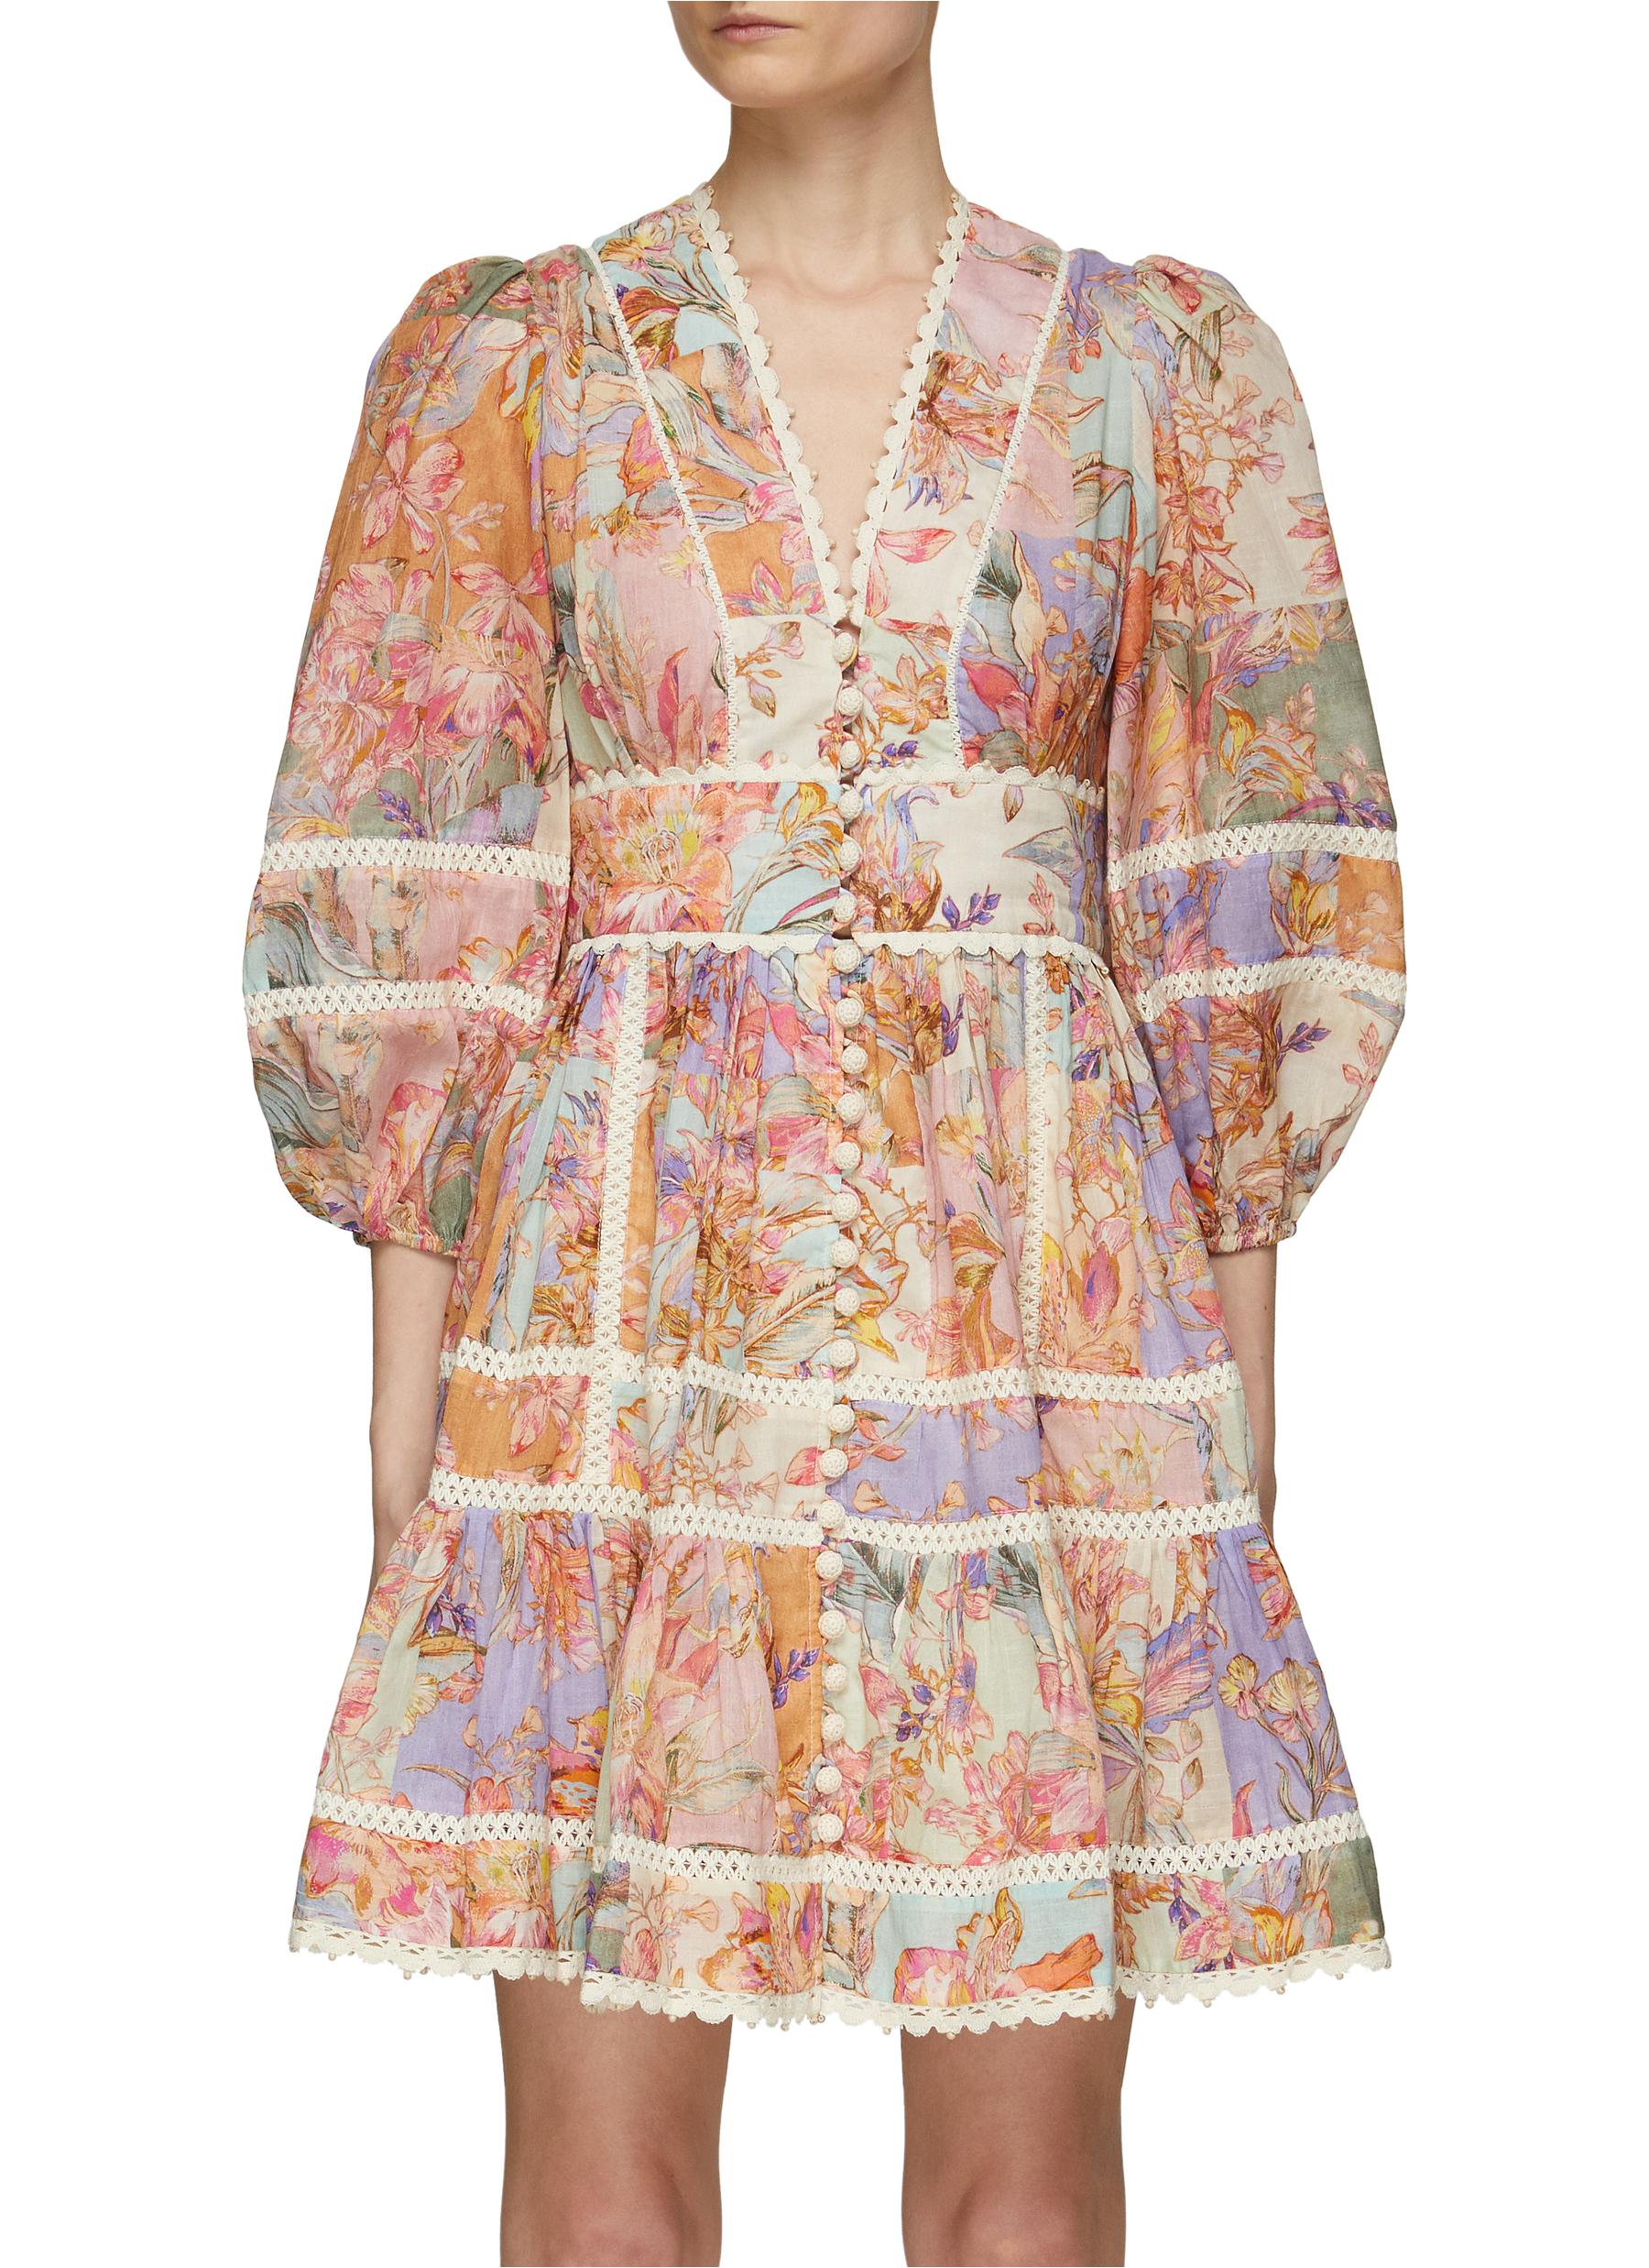 ZIMMERMANN 'Cira' Lace Trim Floral Print Mini Dress